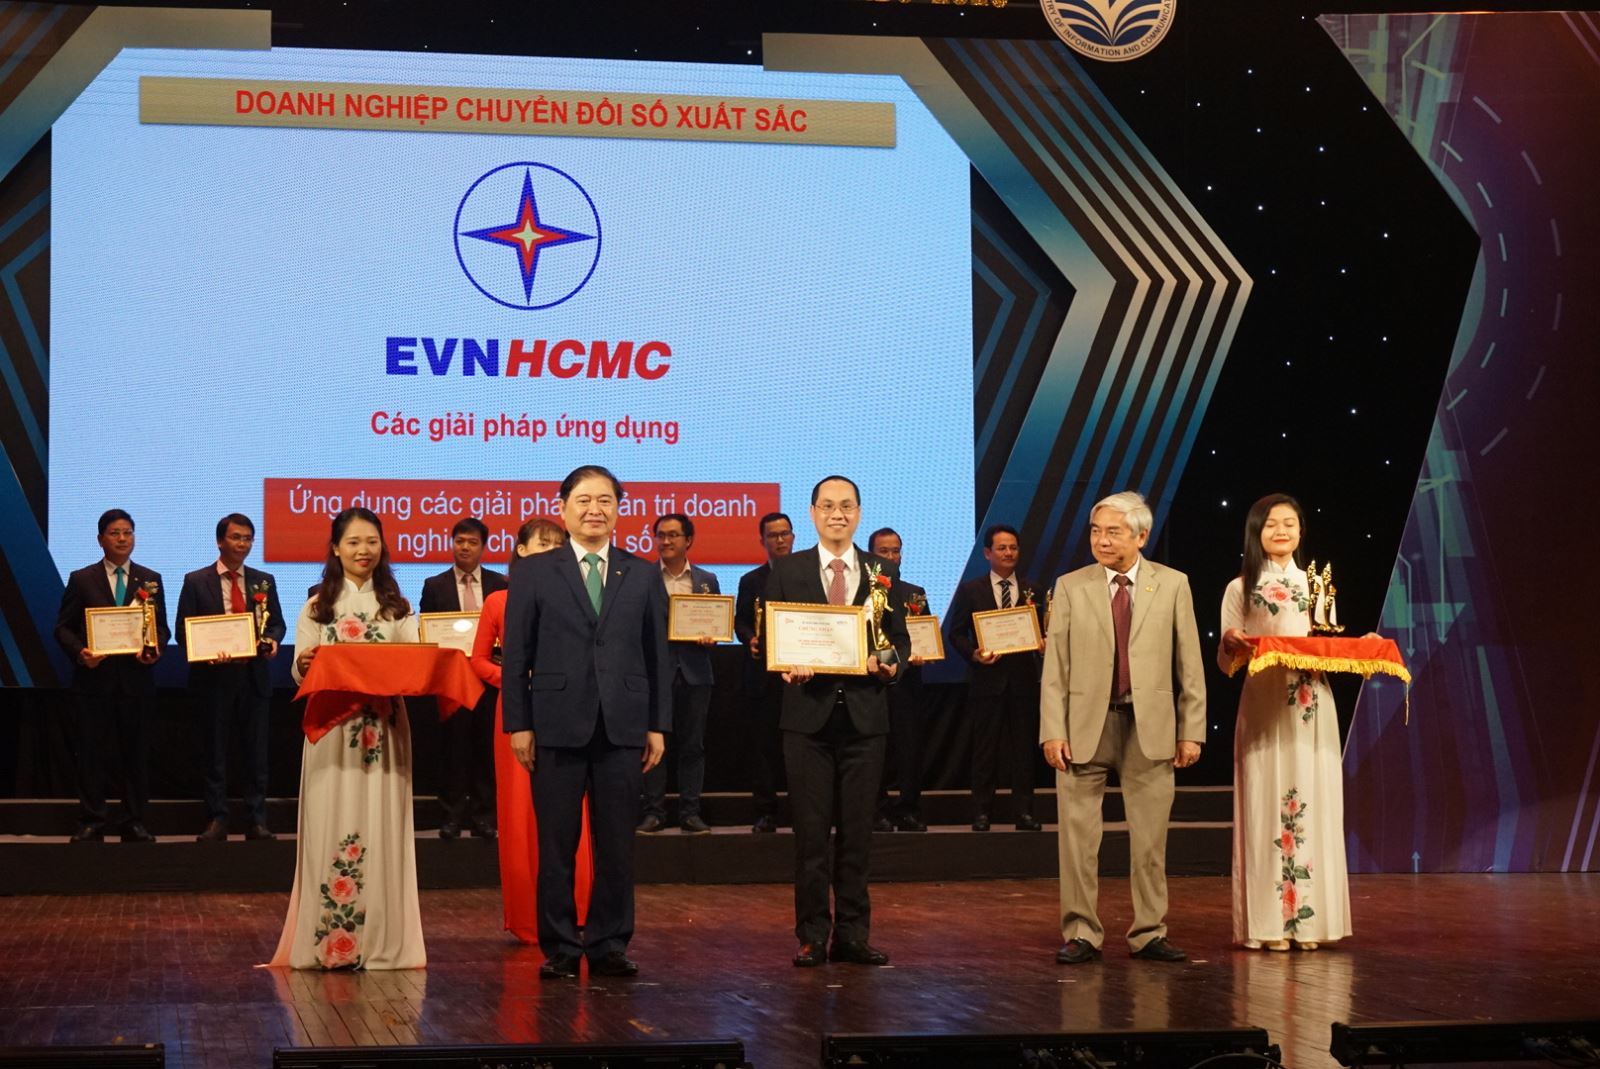 Tổng Công ty điện lực TP Hồ Chí Minh nhận giải thưởng Doanh nghiệp chuyển đổi xuất sắc 2020.